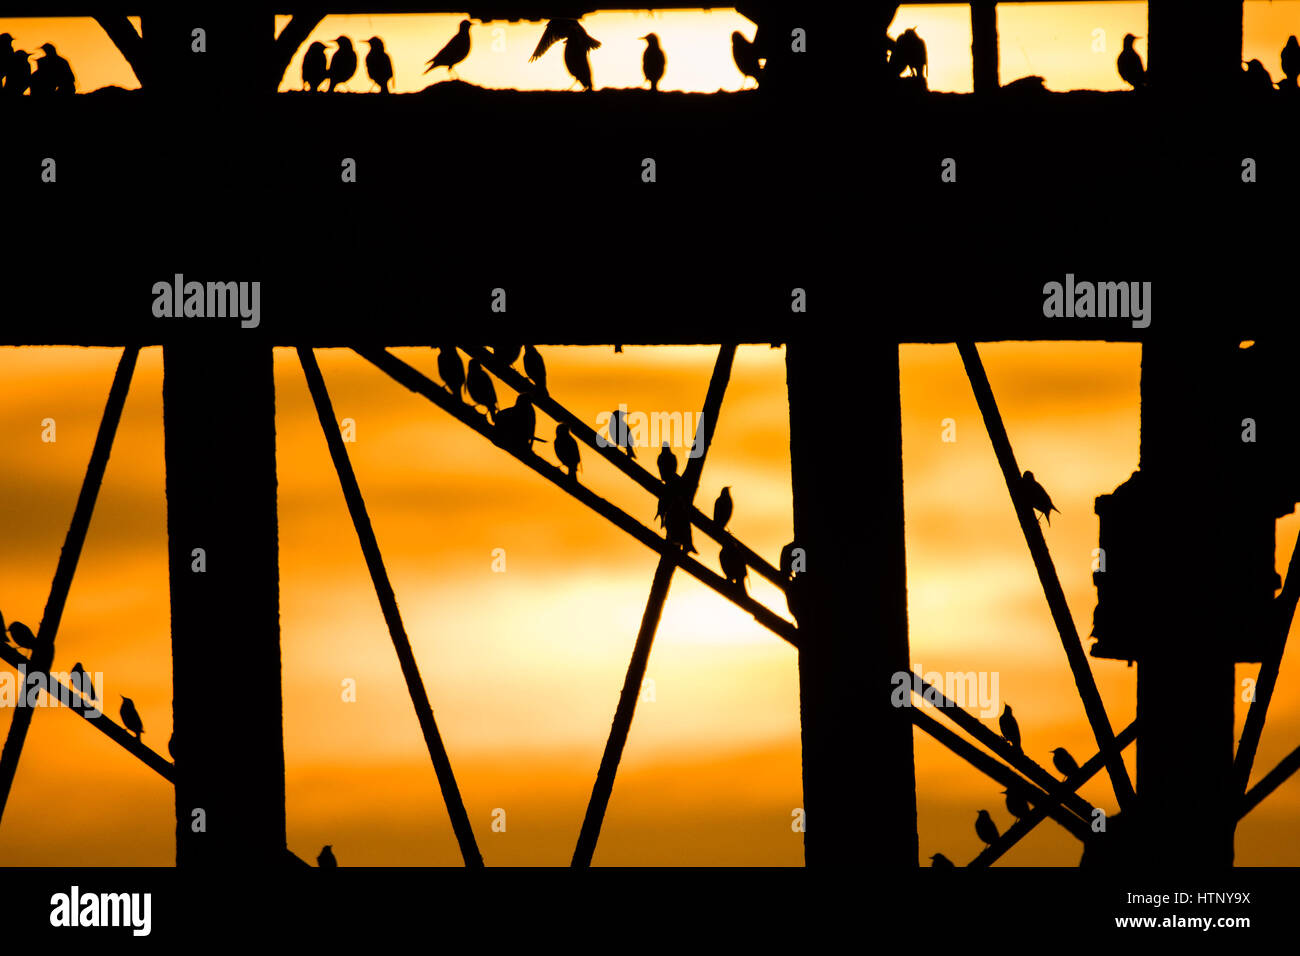 Aberystwyth, Pays de Galles, Royaume-Uni. Mar 13, 2017. Météo France : Au crépuscule, des dizaines de milliers d'étourneaux volent en foule à l'ensemble d'un accueil chaleureux et se percher pour la nuit en toute sécurité sur le réseau de fonte struts et les jambes sous l'Aberystwyth station victorienne pier malgré encore de nombreuses à Aberystwyth, les oiseaux sont dans la société royale pour la protection des oiseaux 'list' des espèces en péril, avec leur nombre à travers le Royaume-Uni a diminué de plus de 60  % depuis les années 1970 Crédit photo : Keith Morris/Alamy Live News UK. 13 Mar, 2017.. Banque D'Images